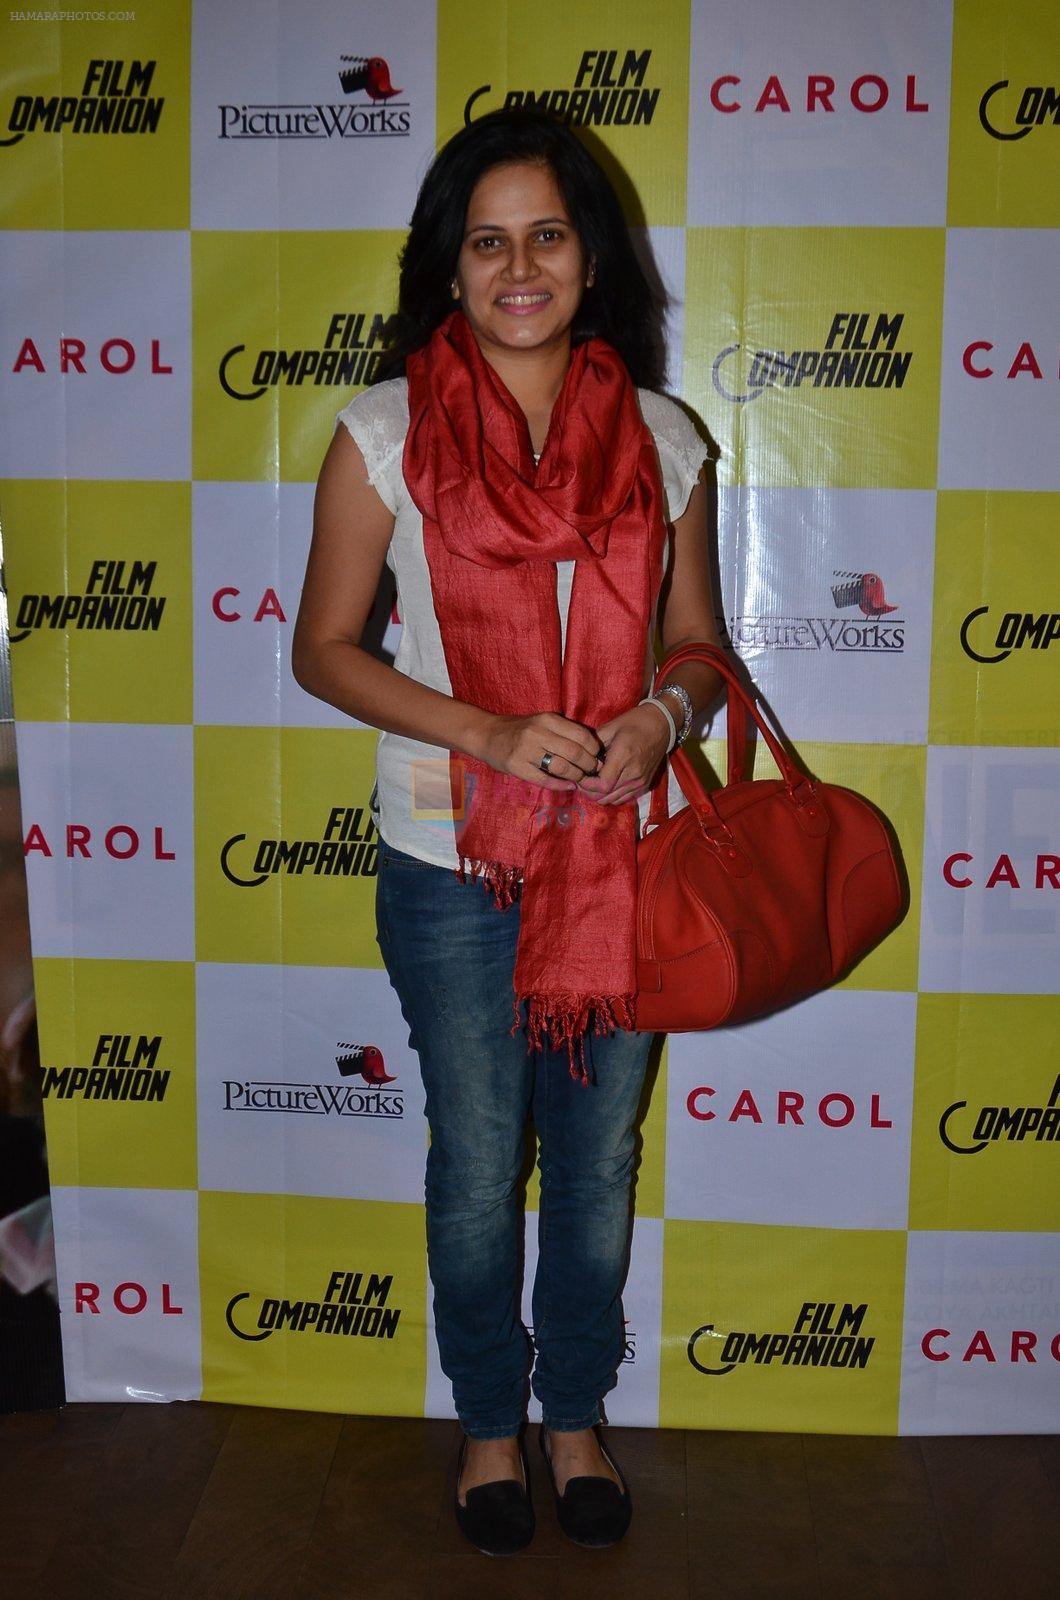 Anupama Chopra hosts screening for film Carol on 2nd Feb 2016